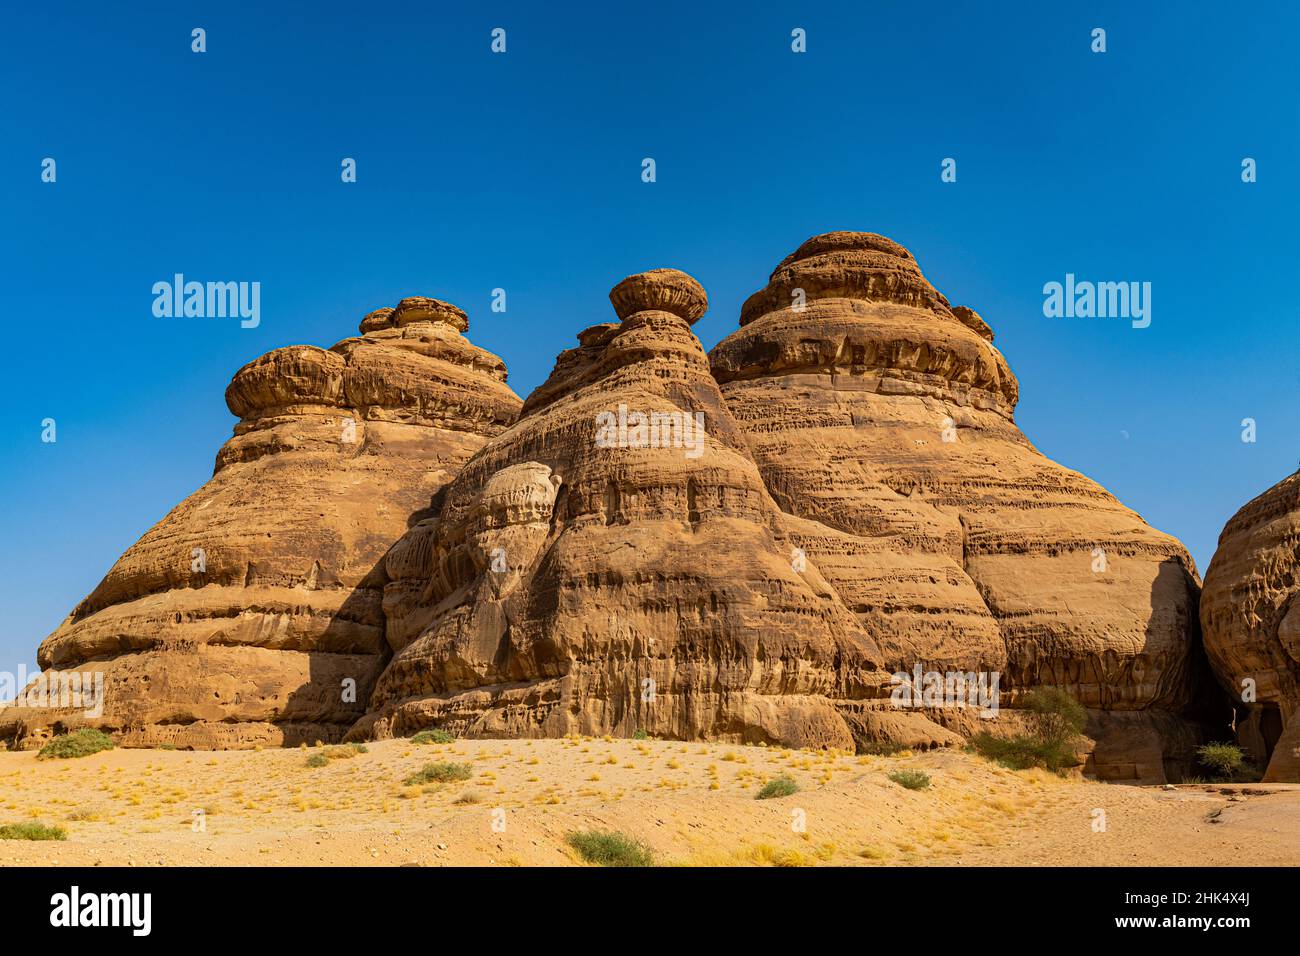 Belle formation rocheuse, Madain Saleh (Hegra) (Al Hijr), site du patrimoine mondial de l'UNESCO, Al Ula, Royaume d'Arabie Saoudite, Moyen-Orient Banque D'Images